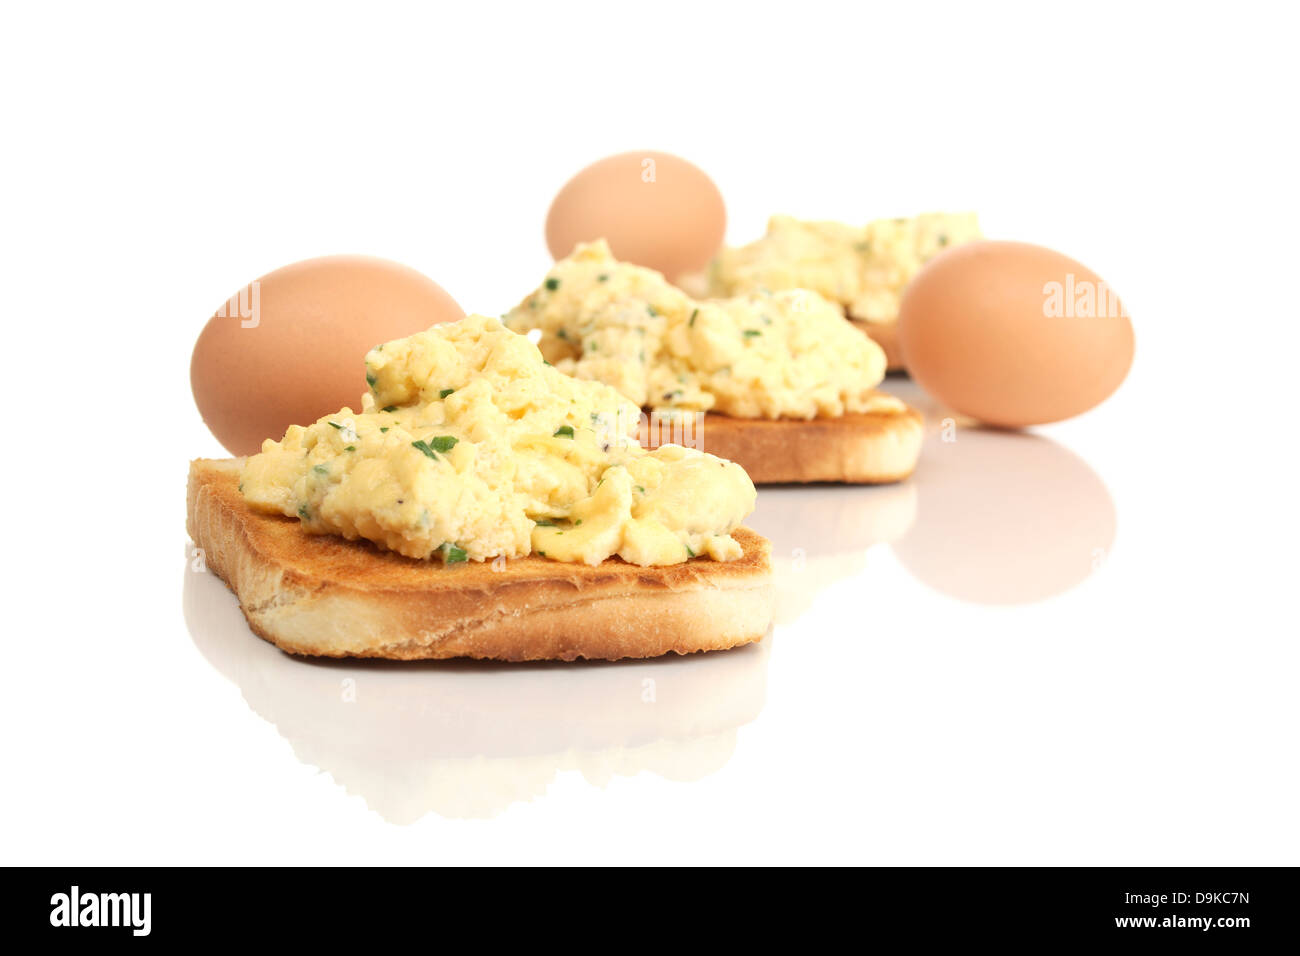 Griller le pain avec des œufs brouillés, de pain grillé avec des oeufs brouillés Banque D'Images